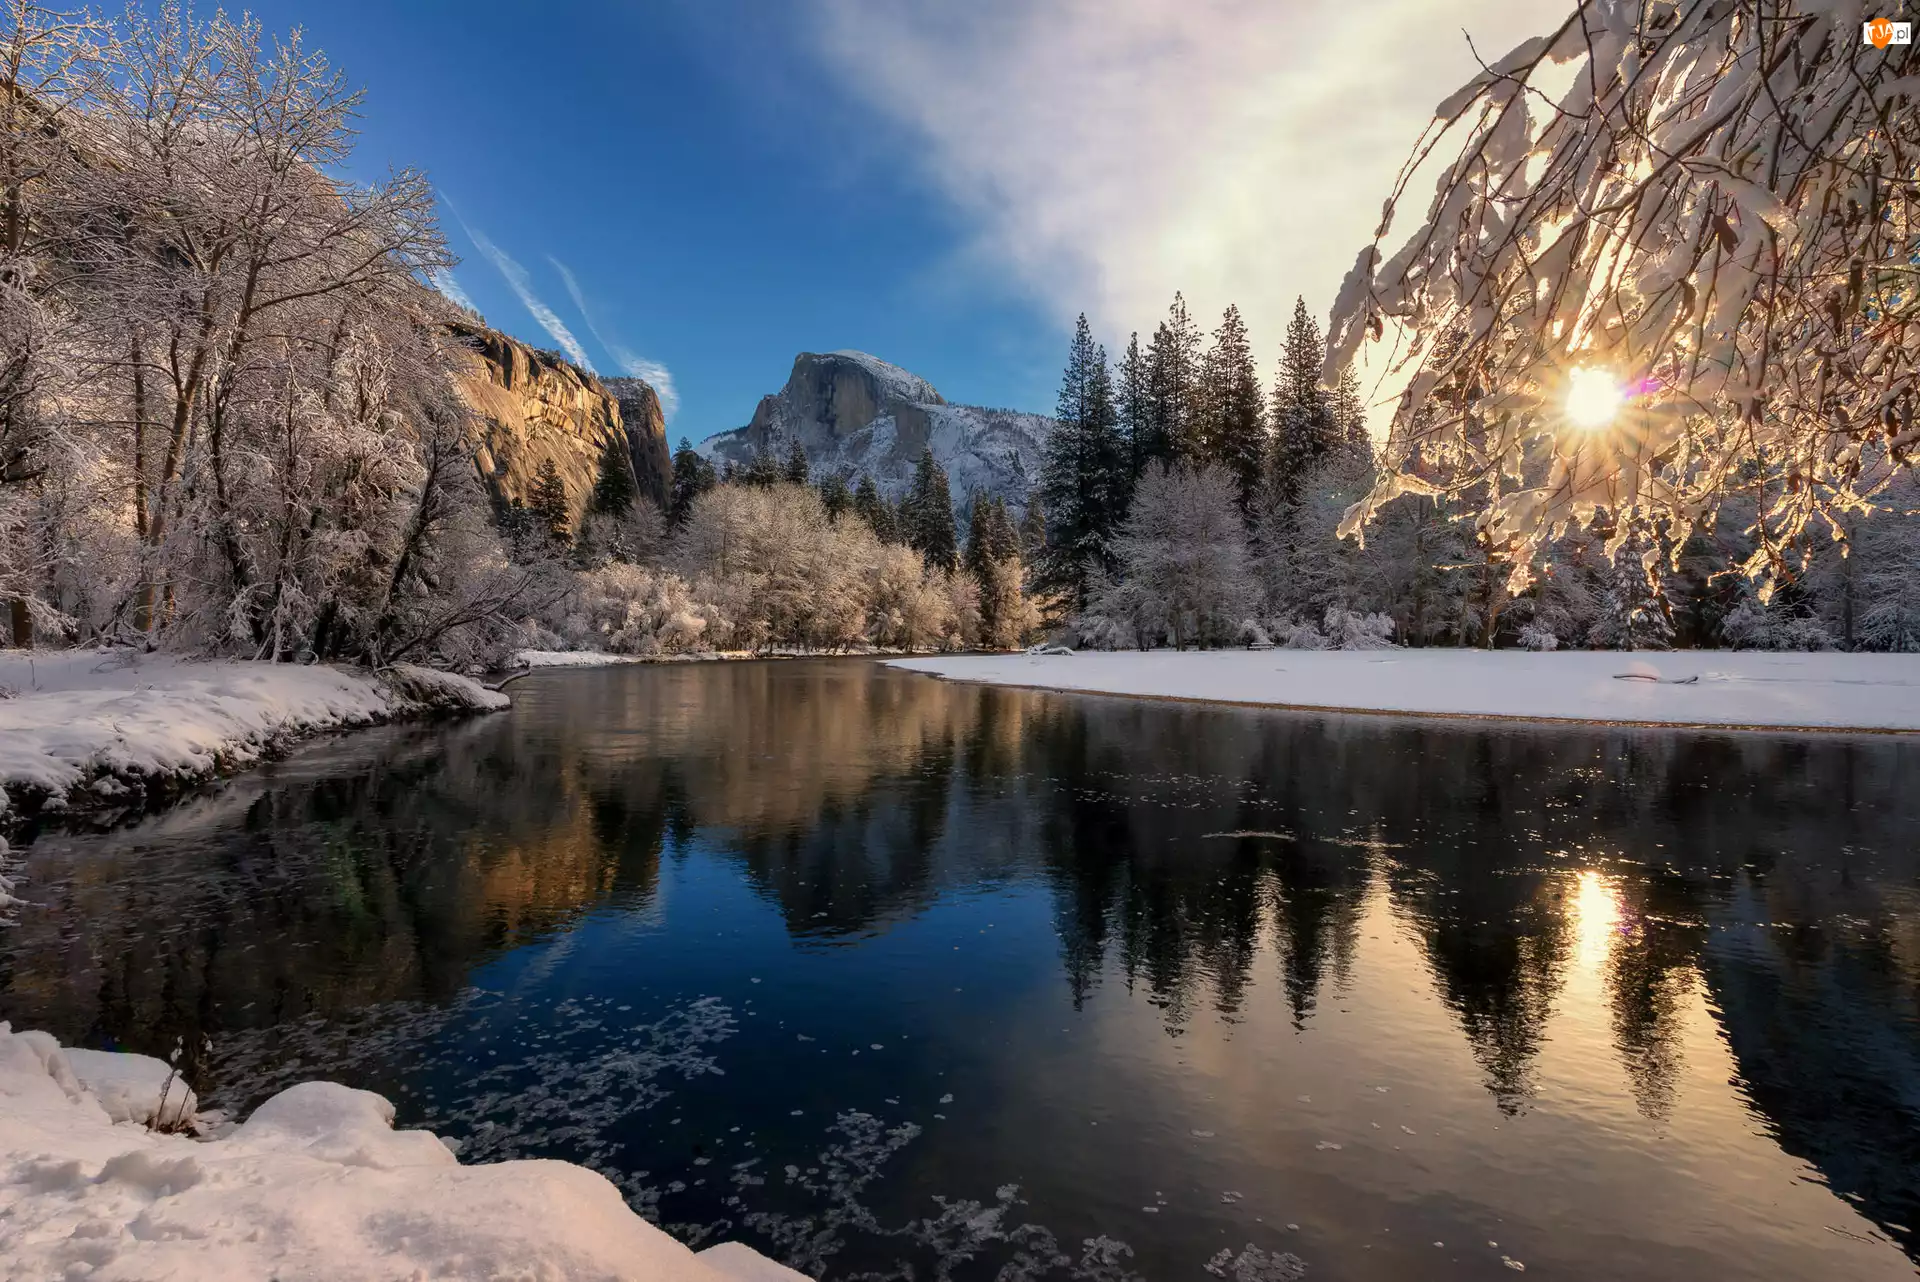 Stany Zjednoczone, Rzeka Merced, Kalifornia, Góry, Promienie słońca, Drzewa, Zima, Park Narodowy Yosemite, Śnieg